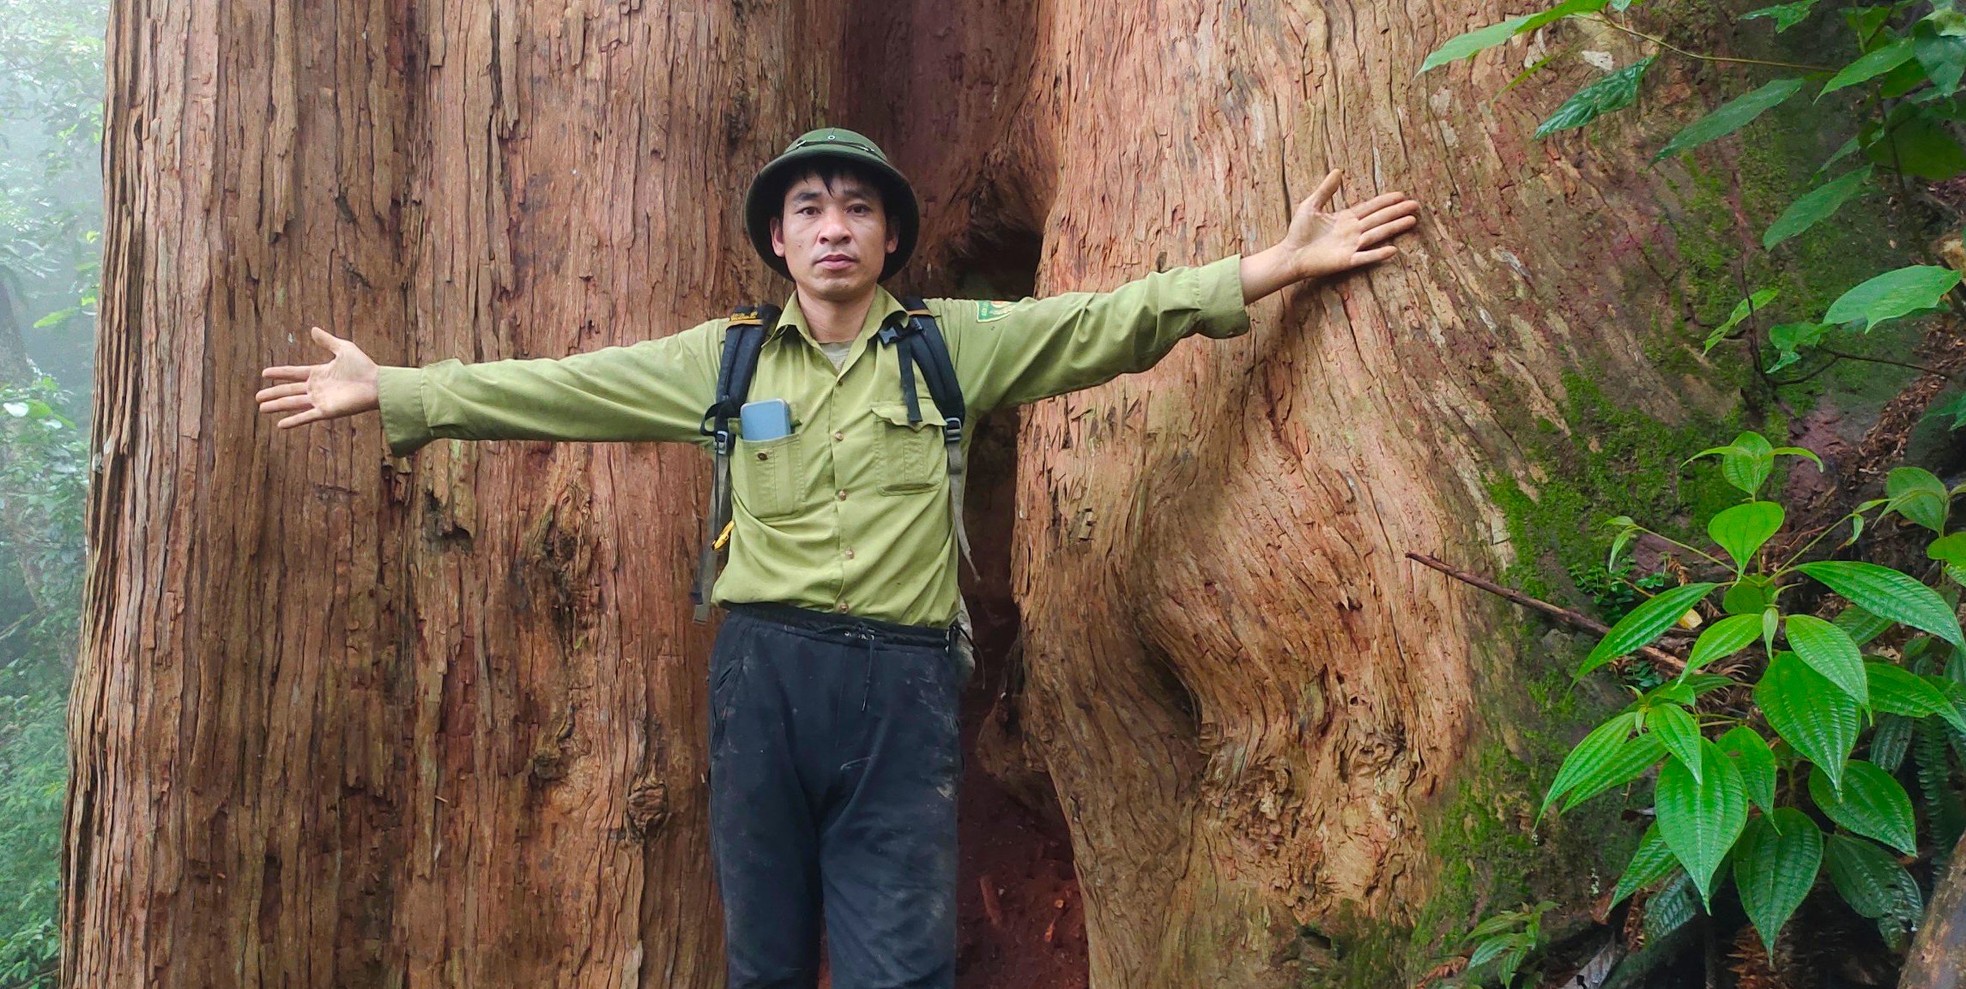 Ngắm cổ thụ Sa mu dầu hơn 2.000 tuổi trong lõi rừng già, được công nhận là cây di sản Việt Nam - Ảnh 10.